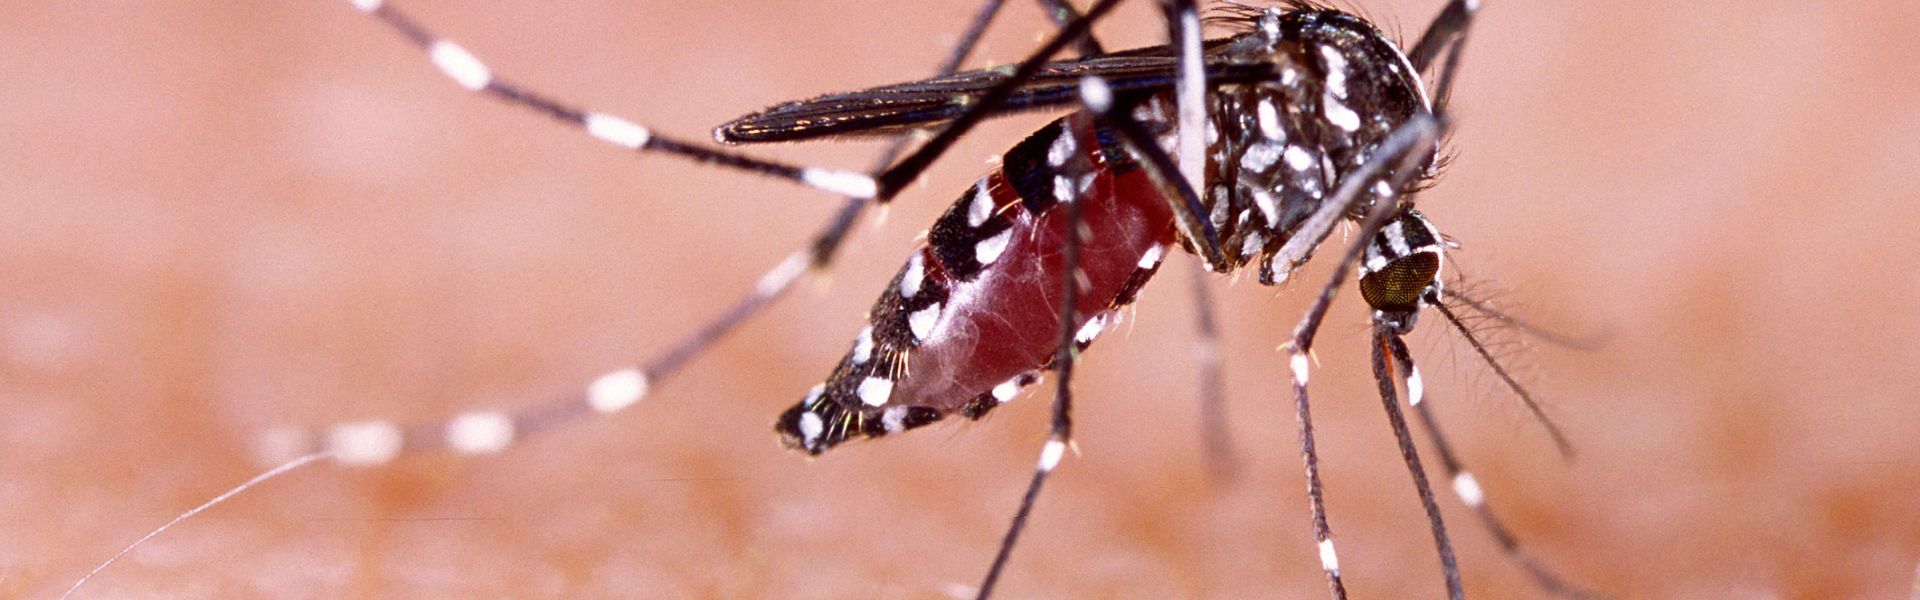 The tiger mosquito | Anses - Agence nationale de sécurité sanitaire de  l'alimentation, de l'environnement et du travail